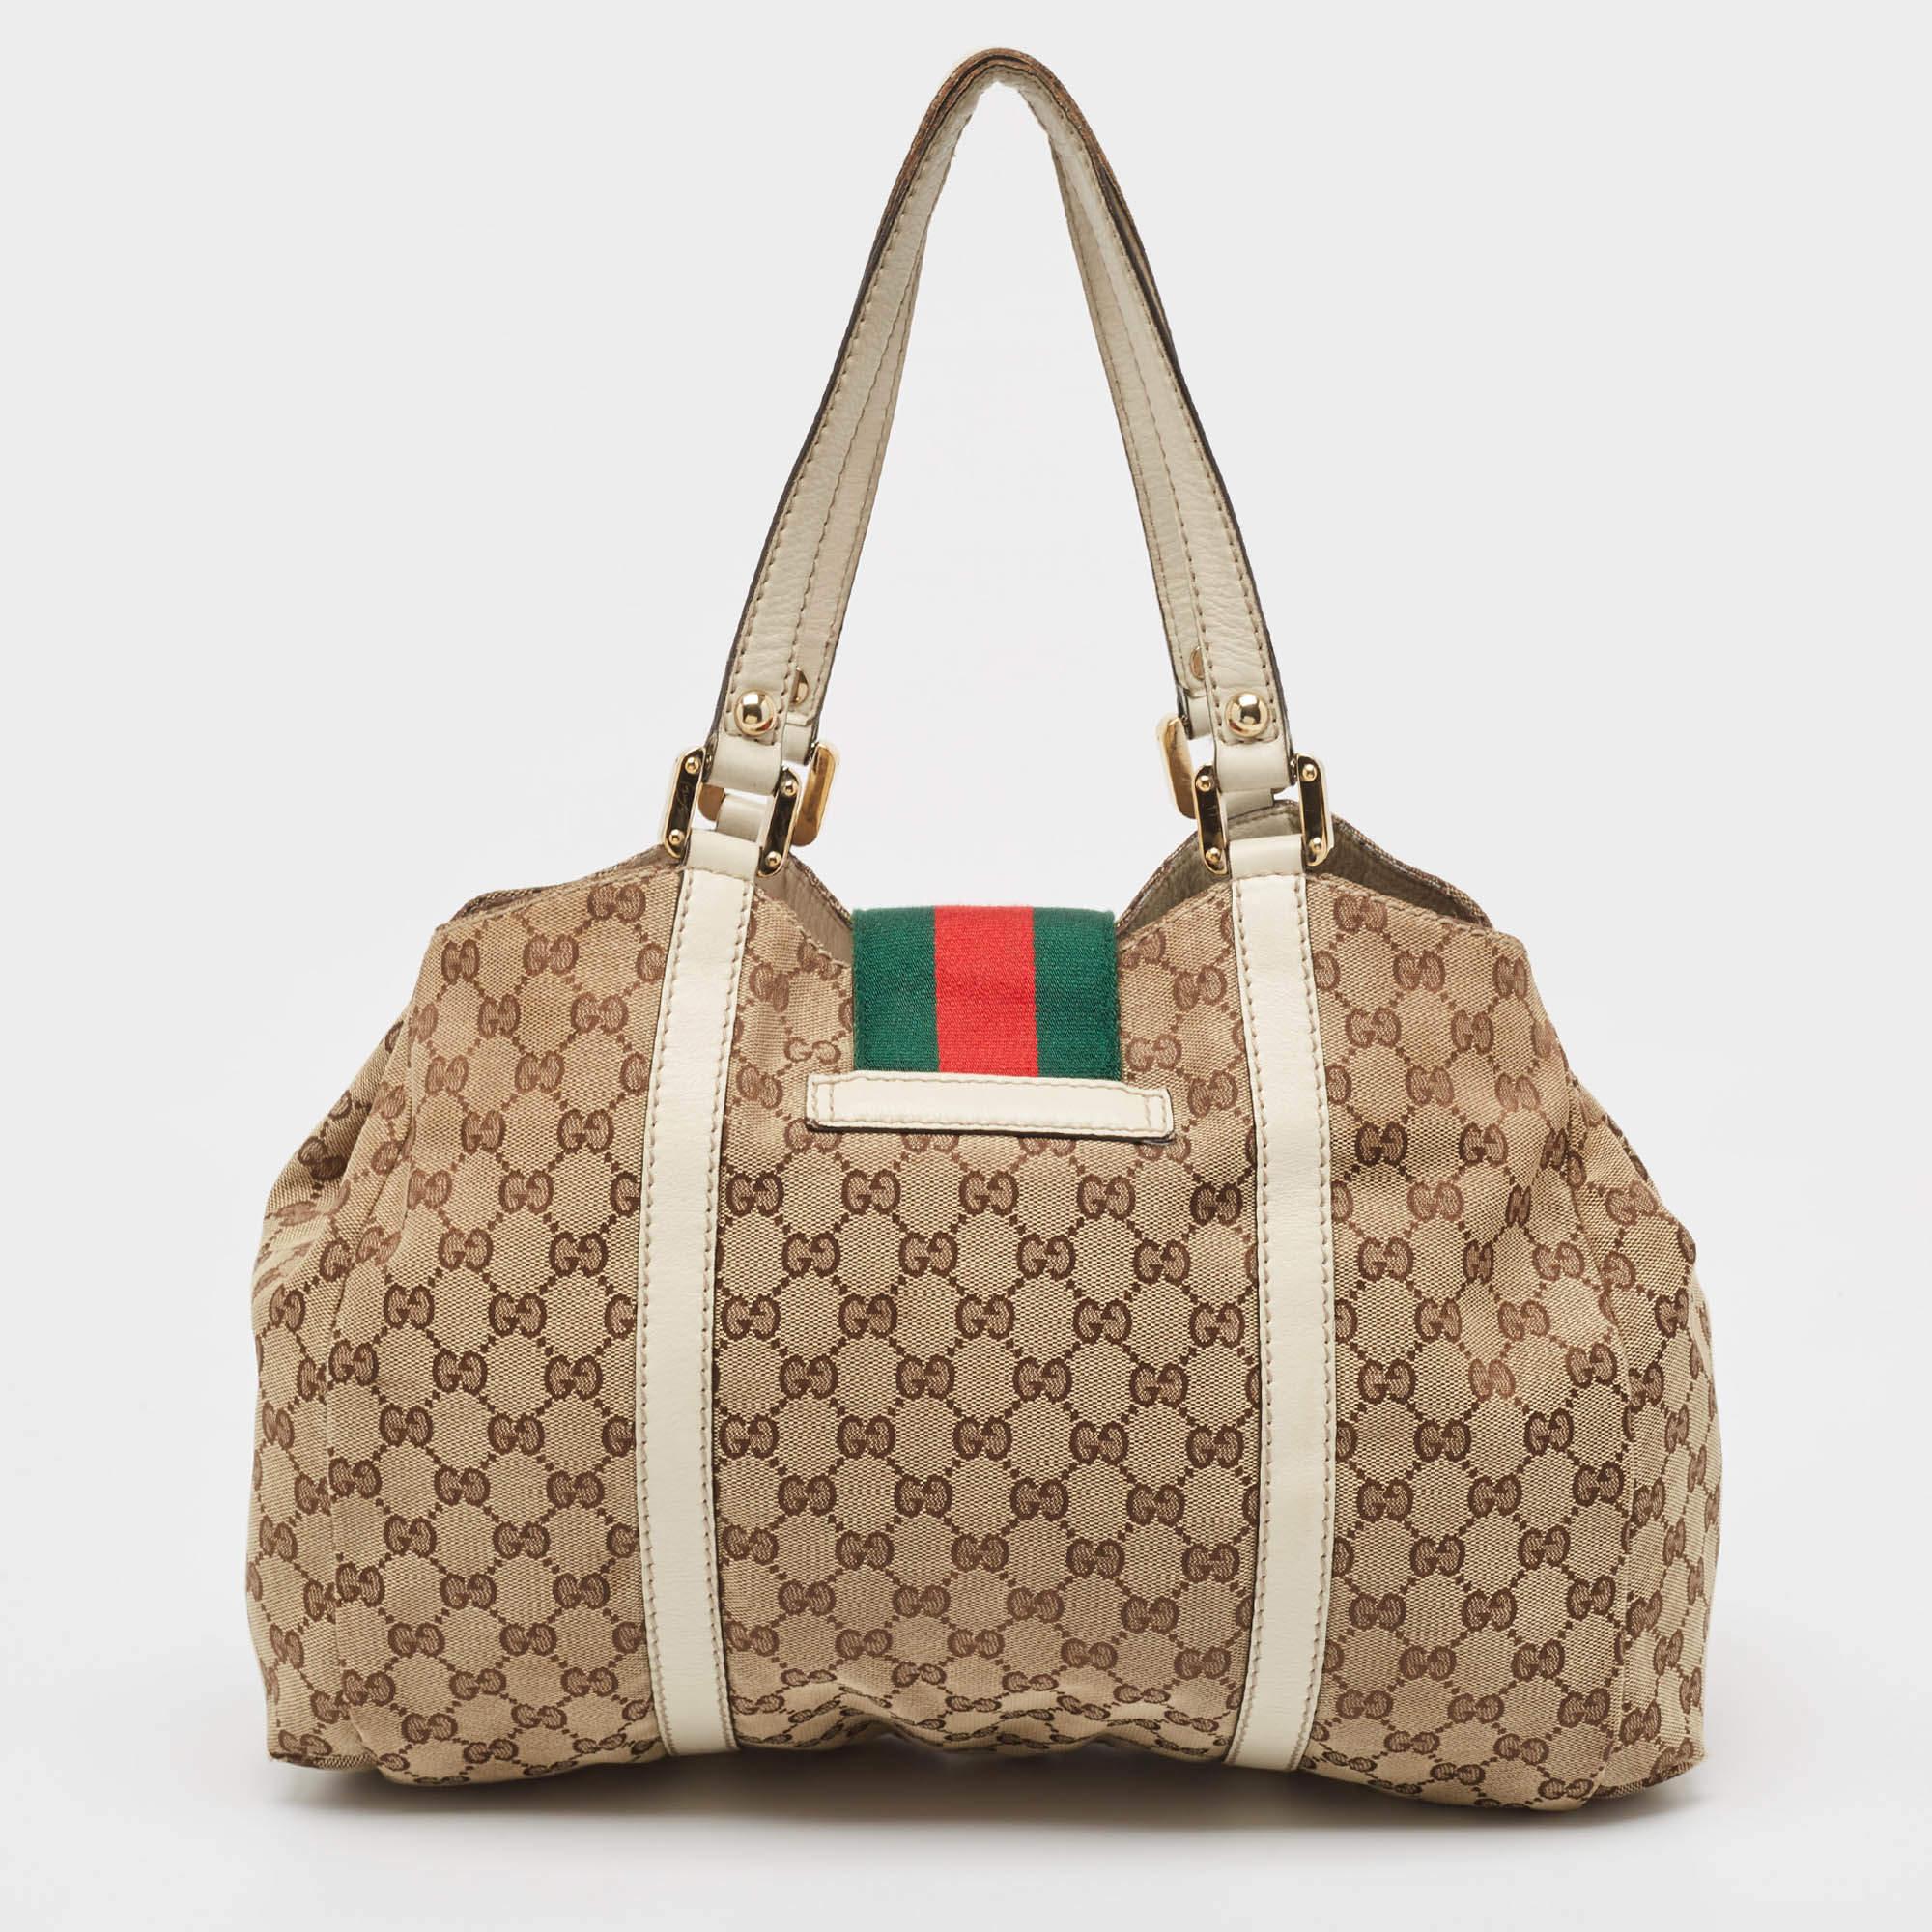 Detalles cuidados, alta calidad y comodidad para el día a día marcan este bolso de diseño para mujer de Gucci. El bolso está cosido con maestría para ofrecer un aspecto refinado y un acabado impecable.

